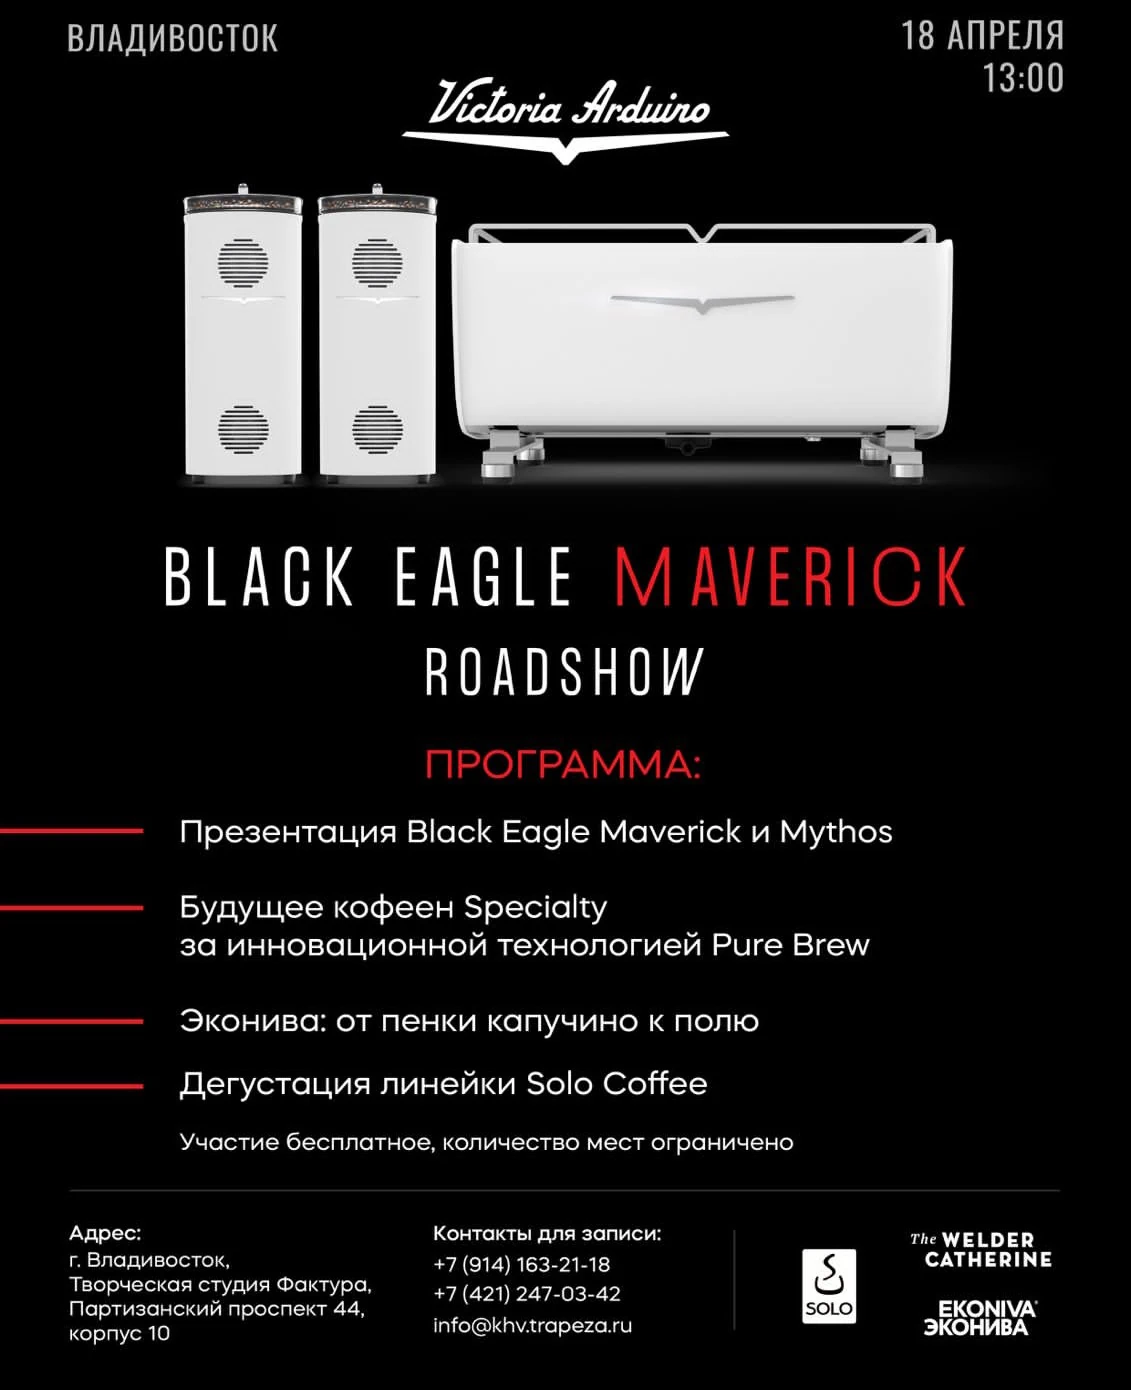 18 апреля мы будем во Владивостоке презентовать наши Black Eagle Maverick и MYTHOS